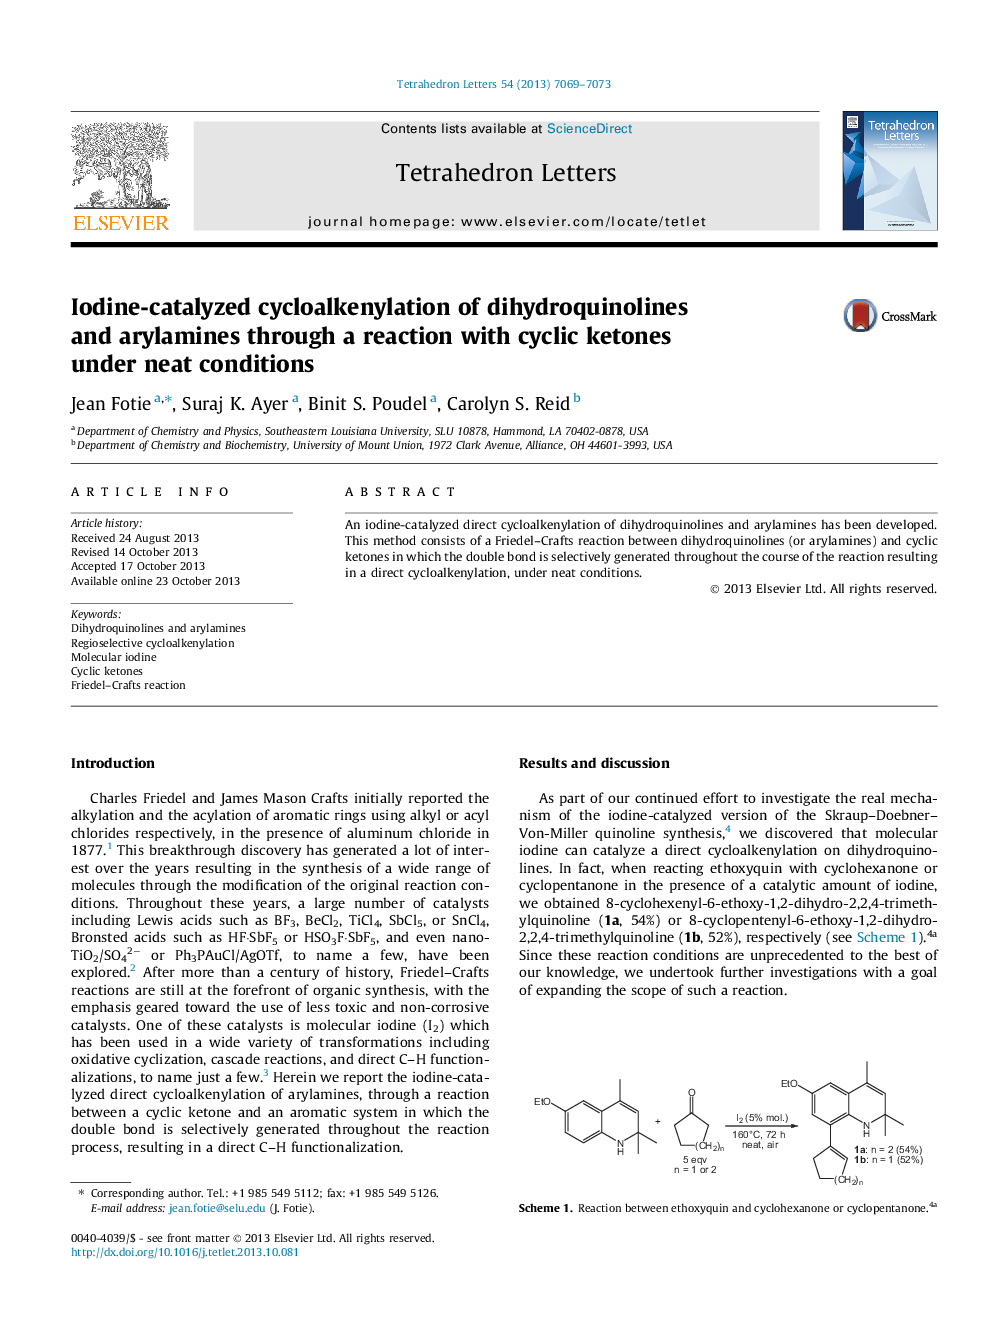 سیکلوککنیلسیون دی هیدروکینولین ها و آریلامین ها توسط کاتالیزور ید بوسیله یک واکنش با کتون های چرخه ای در شرایط معقول 